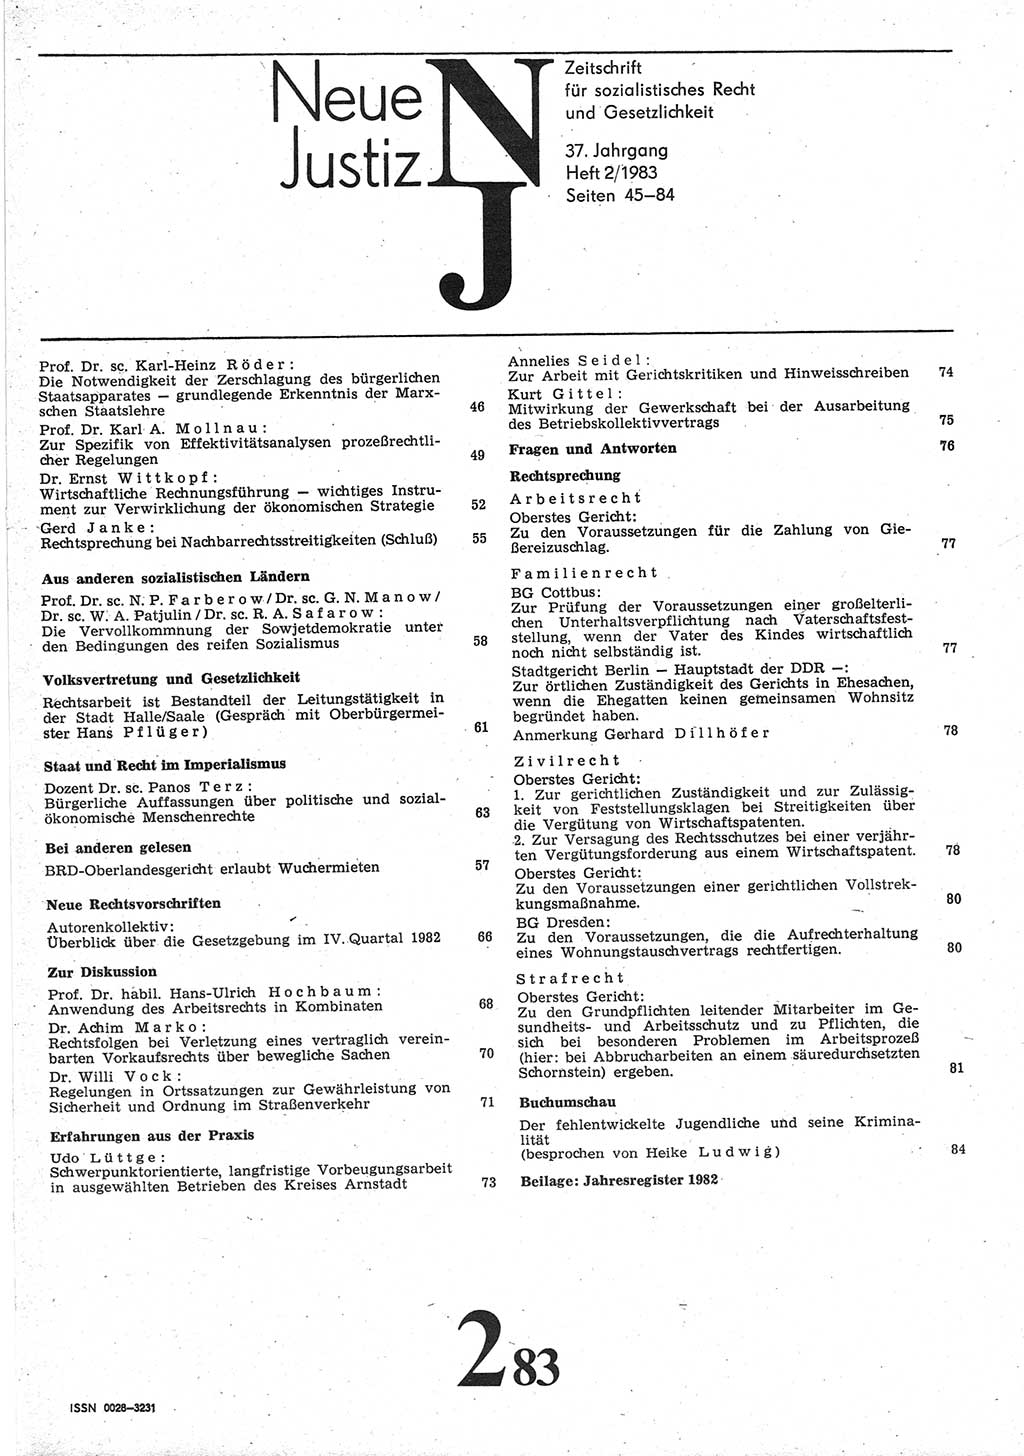 Neue Justiz (NJ), Zeitschrift für sozialistisches Recht und Gesetzlichkeit [Deutsche Demokratische Republik (DDR)], 37. Jahrgang 1983, Seite 45 (NJ DDR 1983, S. 45)